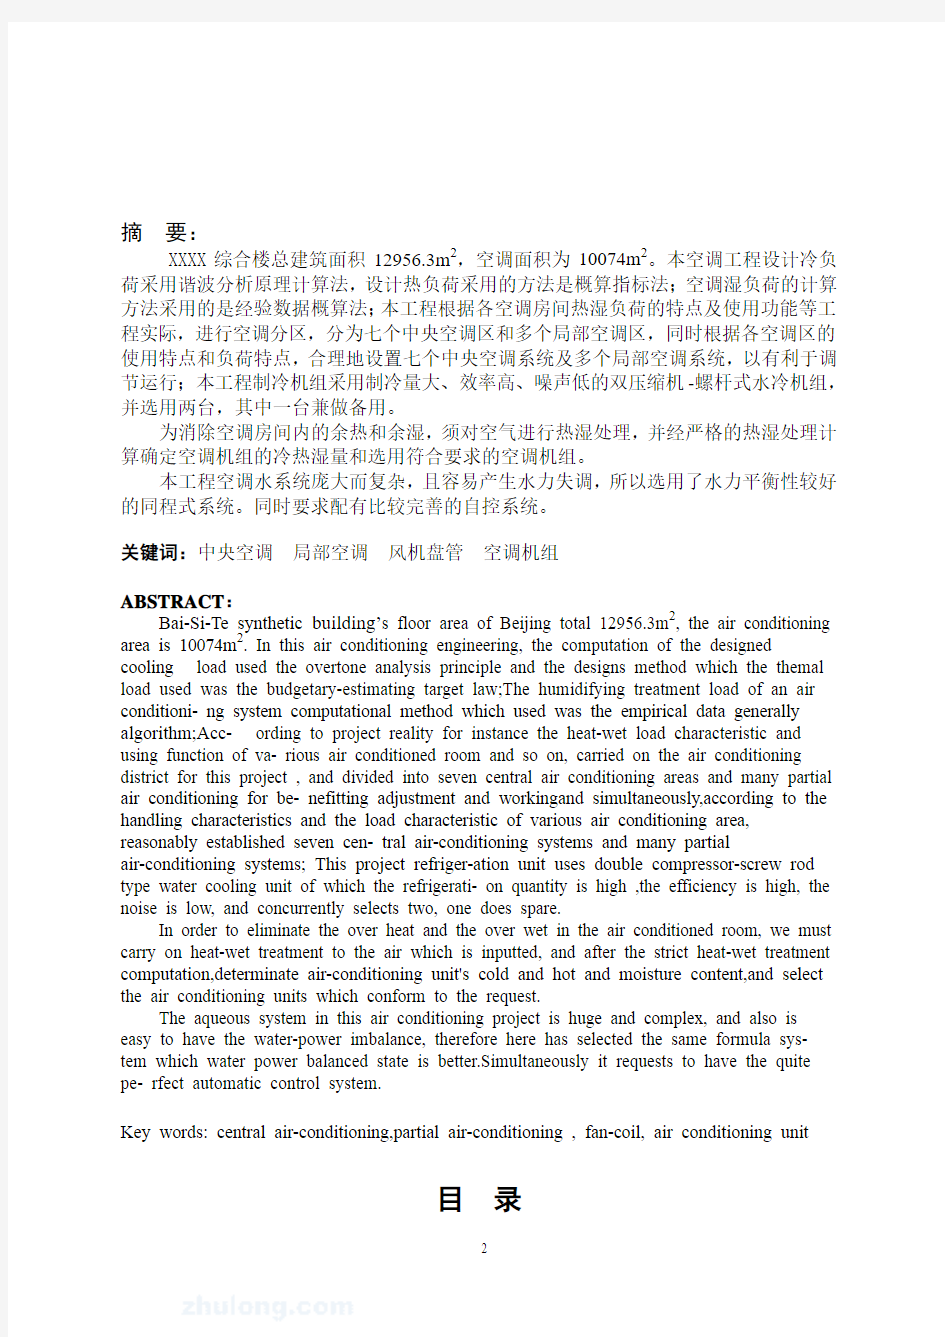 建筑环境与设备工程专业精品毕业设计北京某综合楼空调工程毕业设计计算书